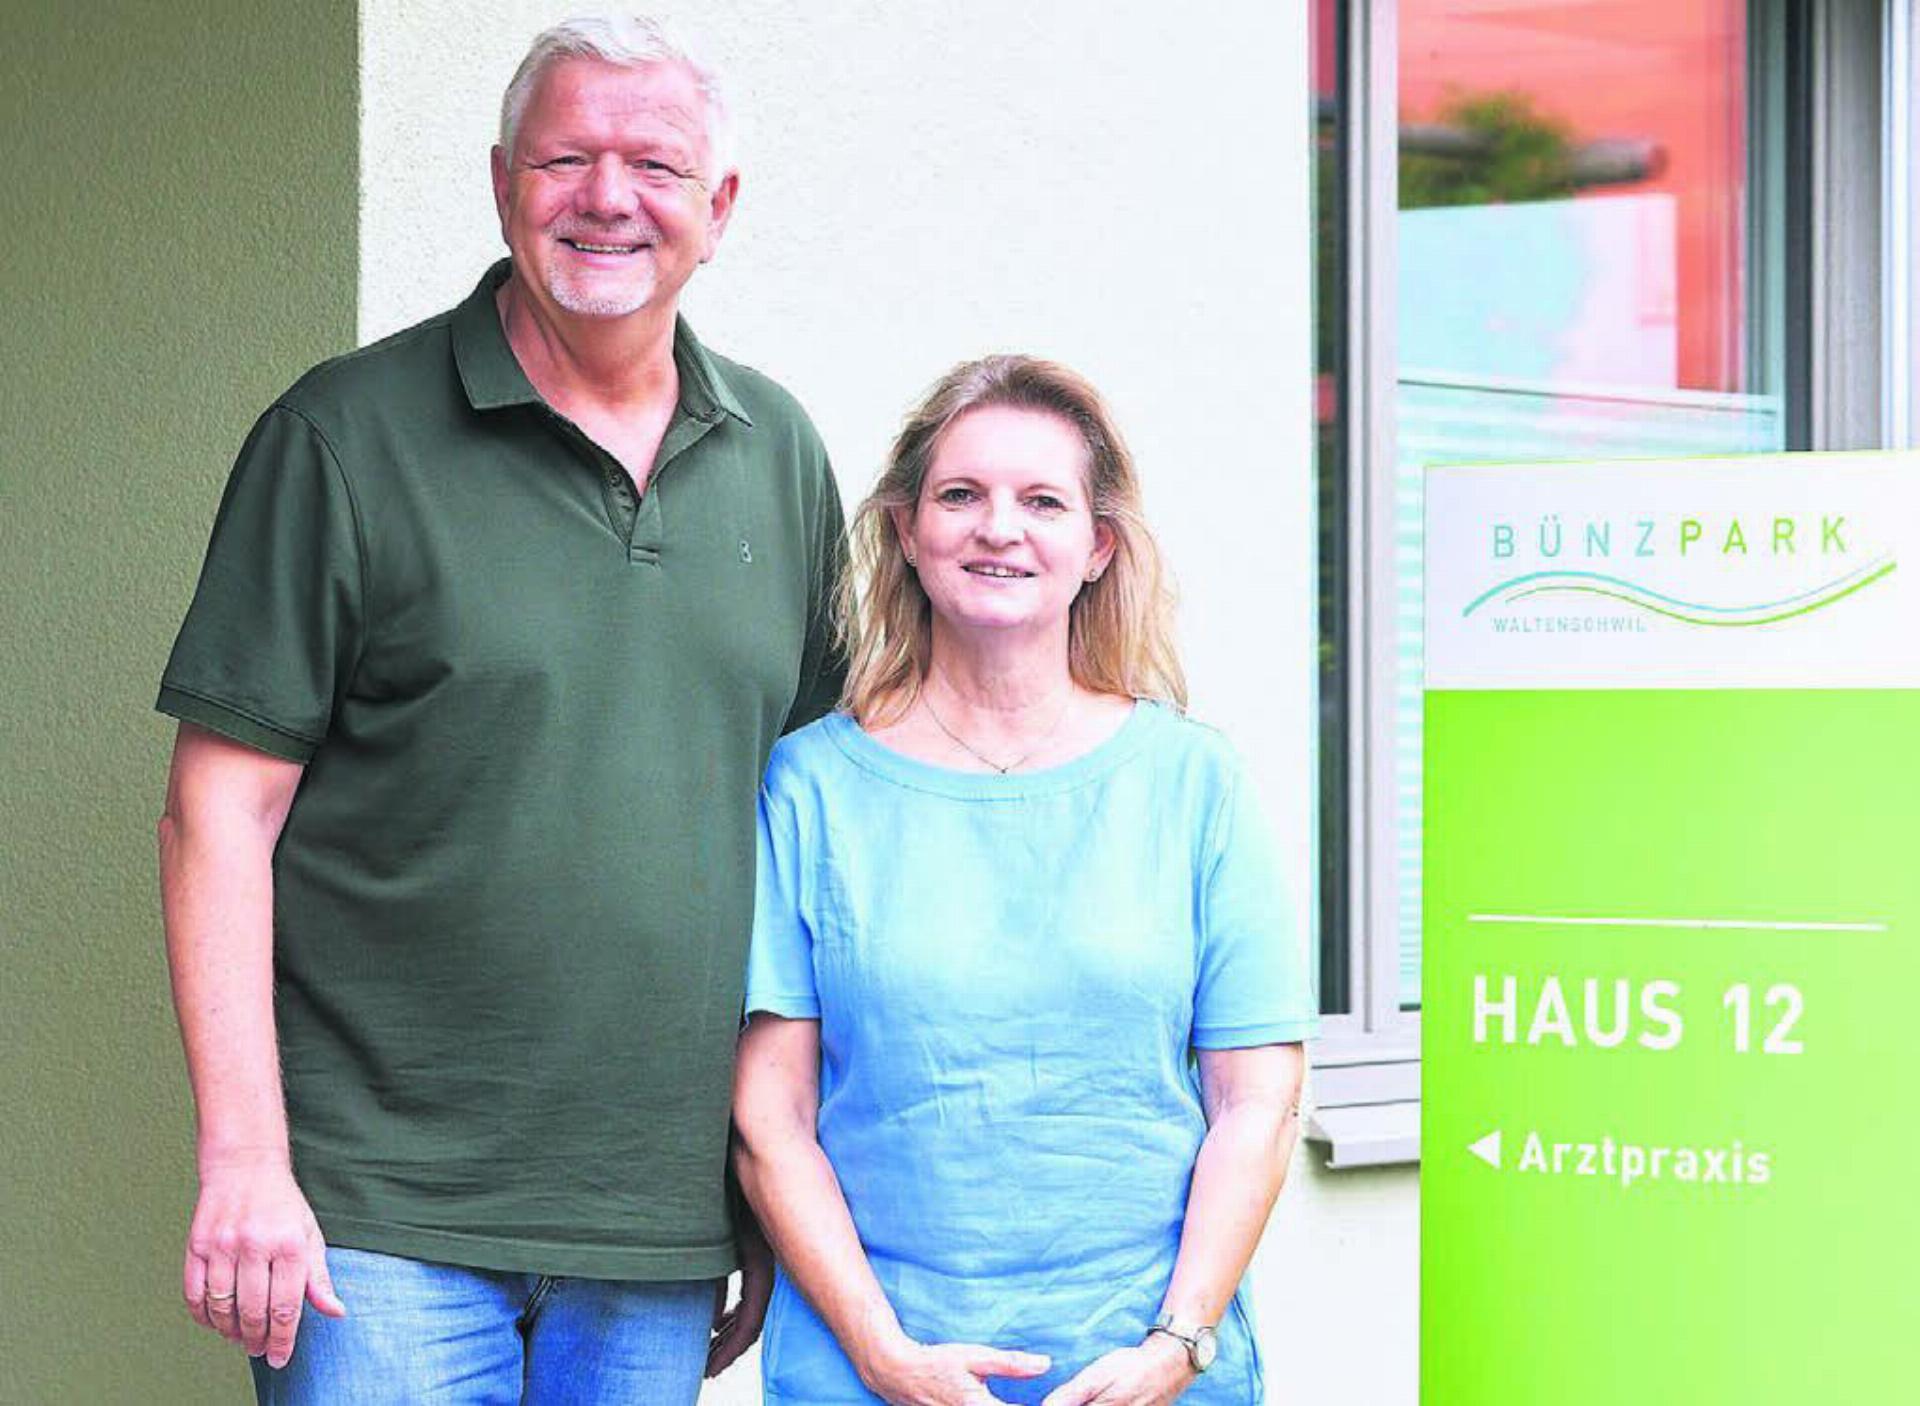 Stefan und Erika Schäfer vor ihrer Praxis beim Bünzpark in Waltenschwil. Bild: zg